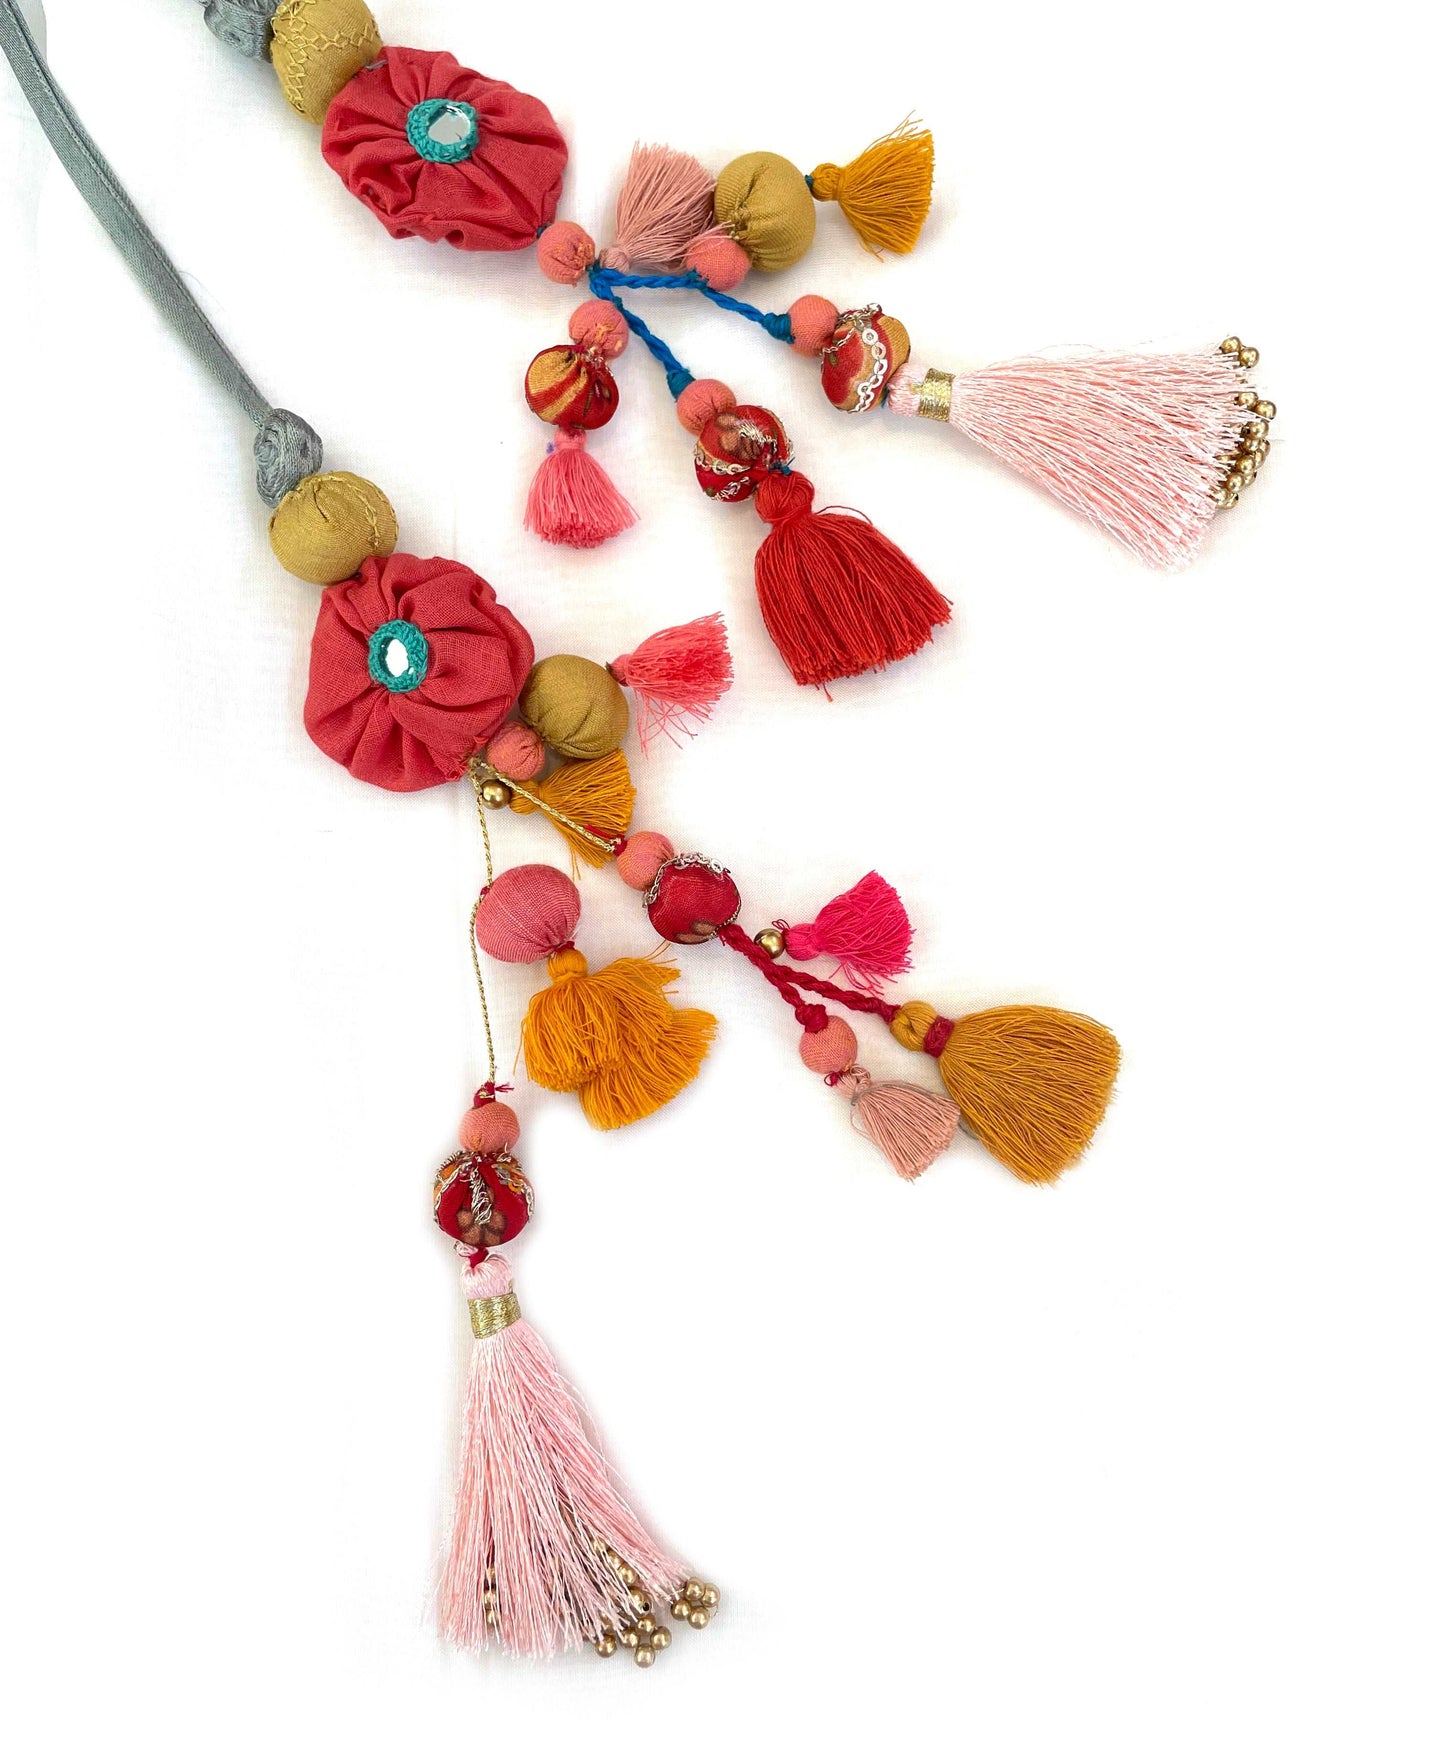 Handmade latkan hangings for clothing - Aesthetics Designer Label